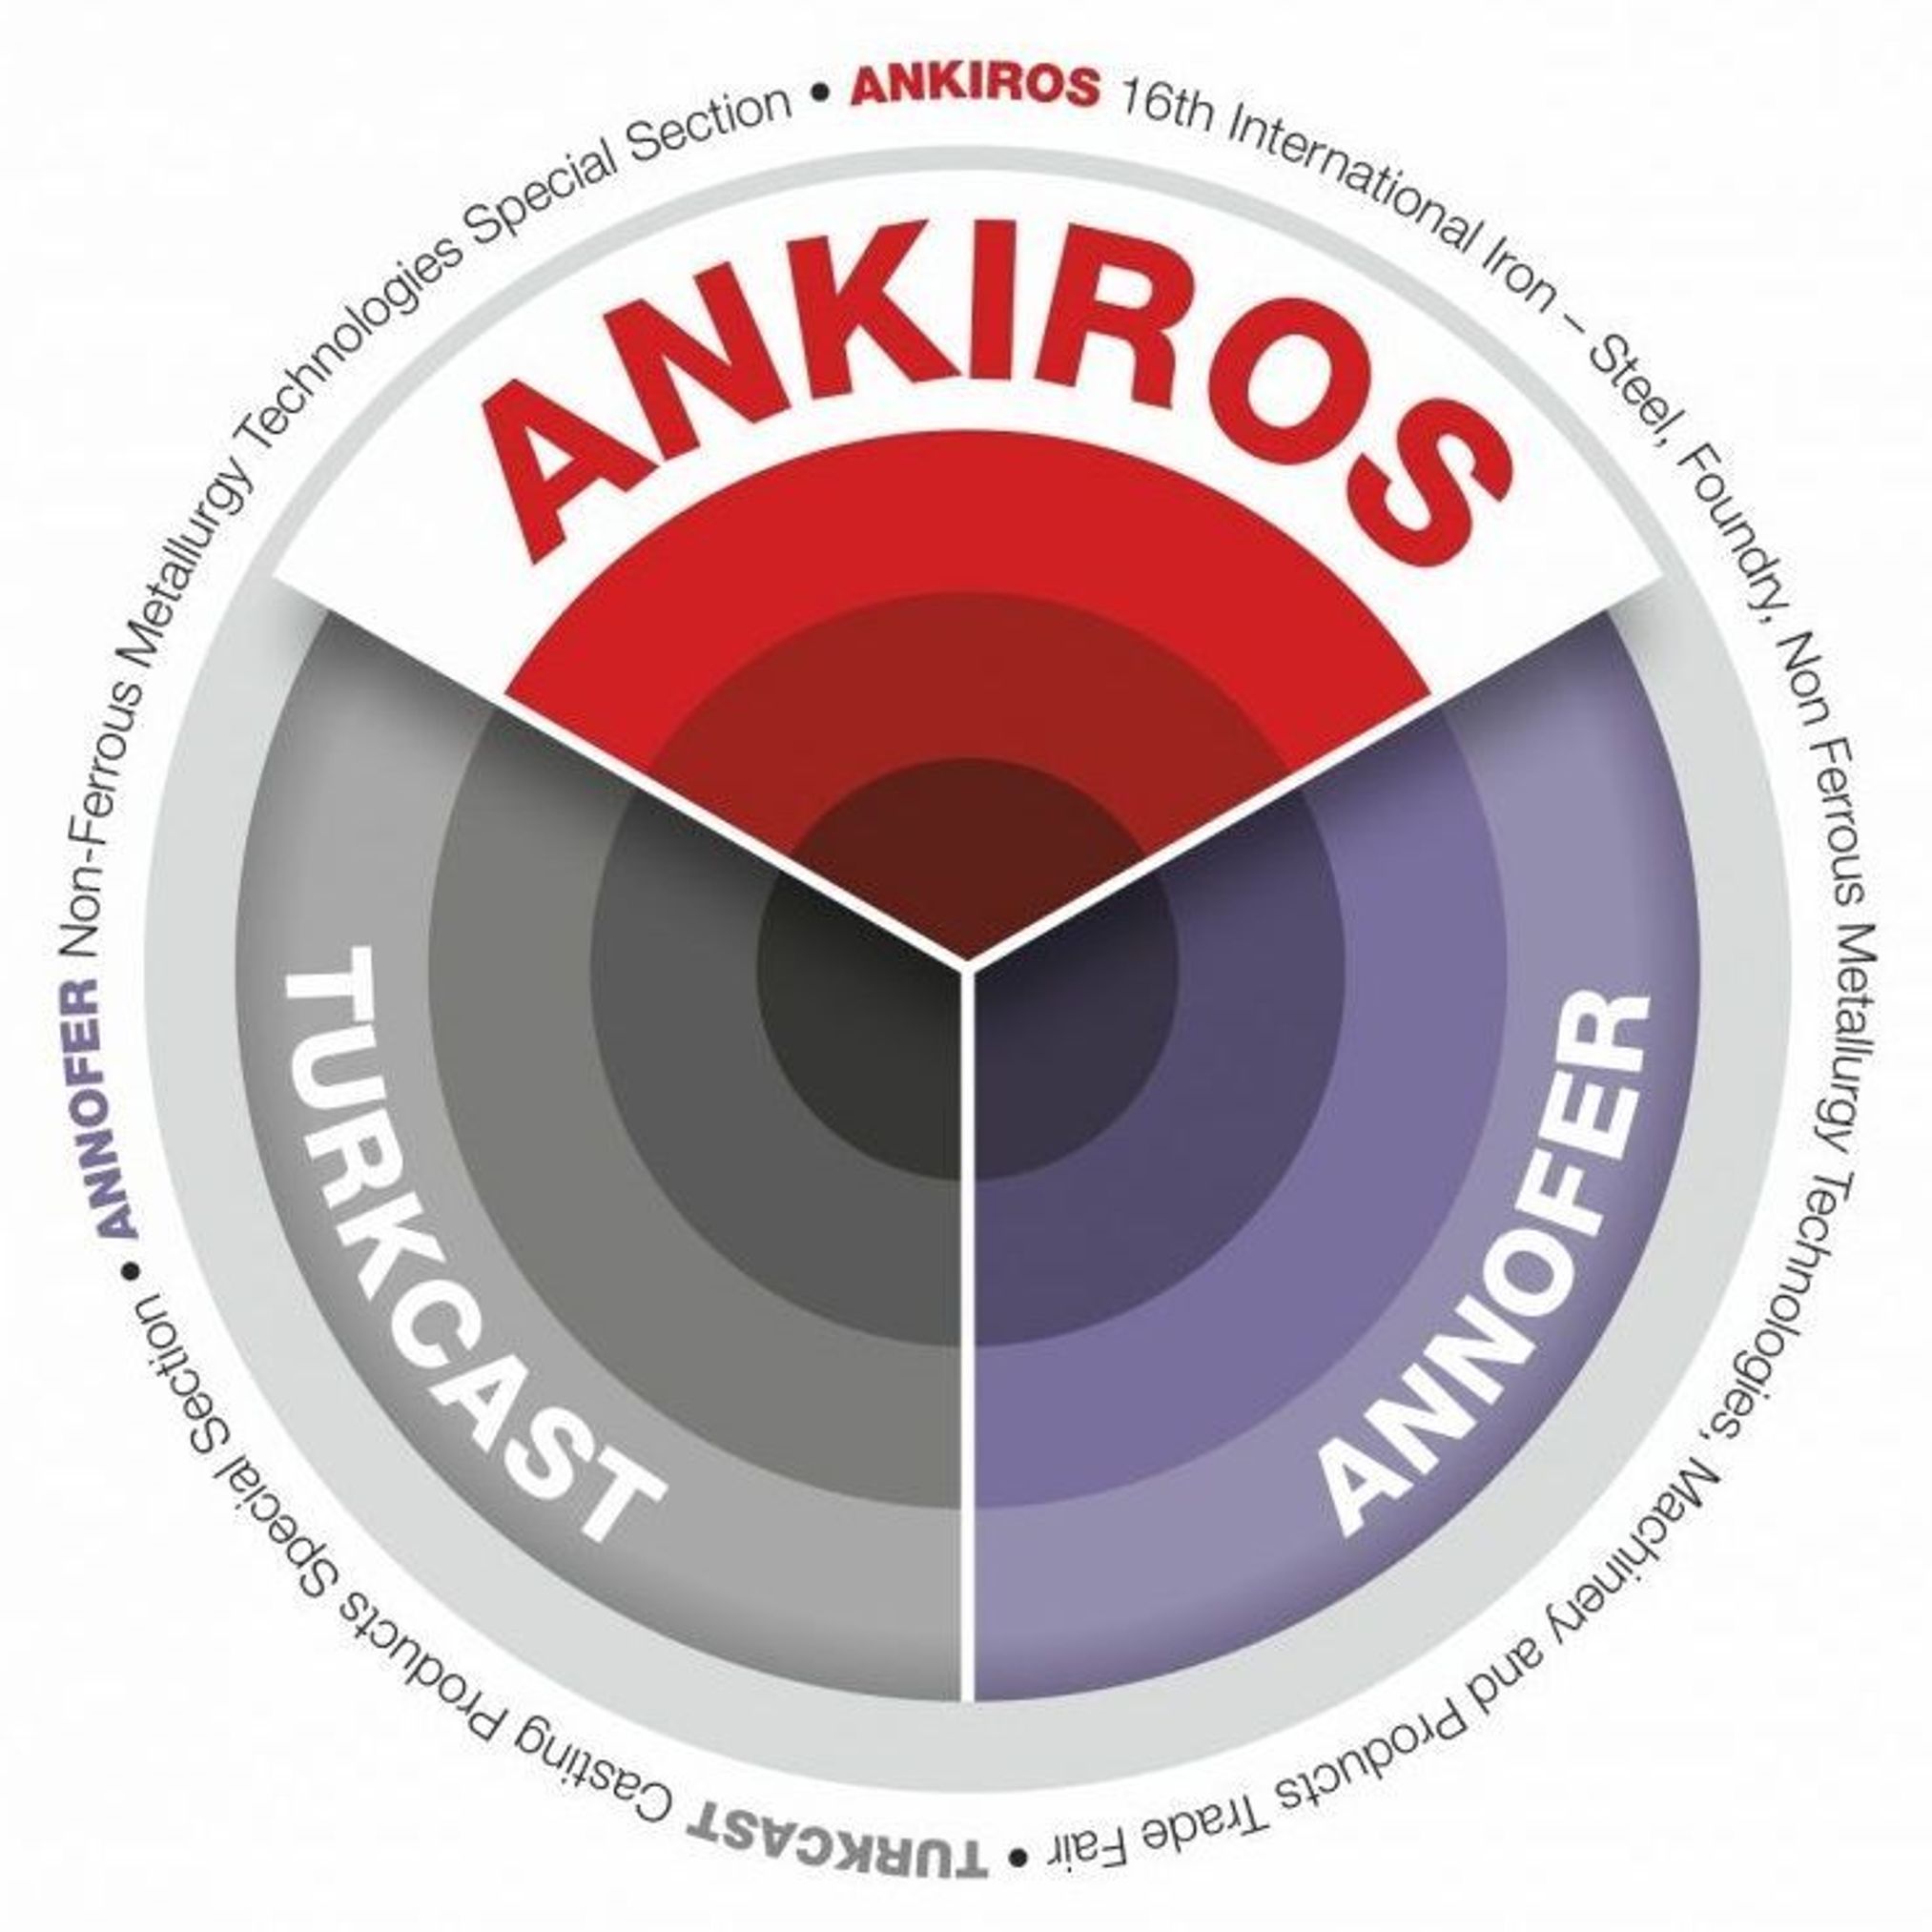 Anikros